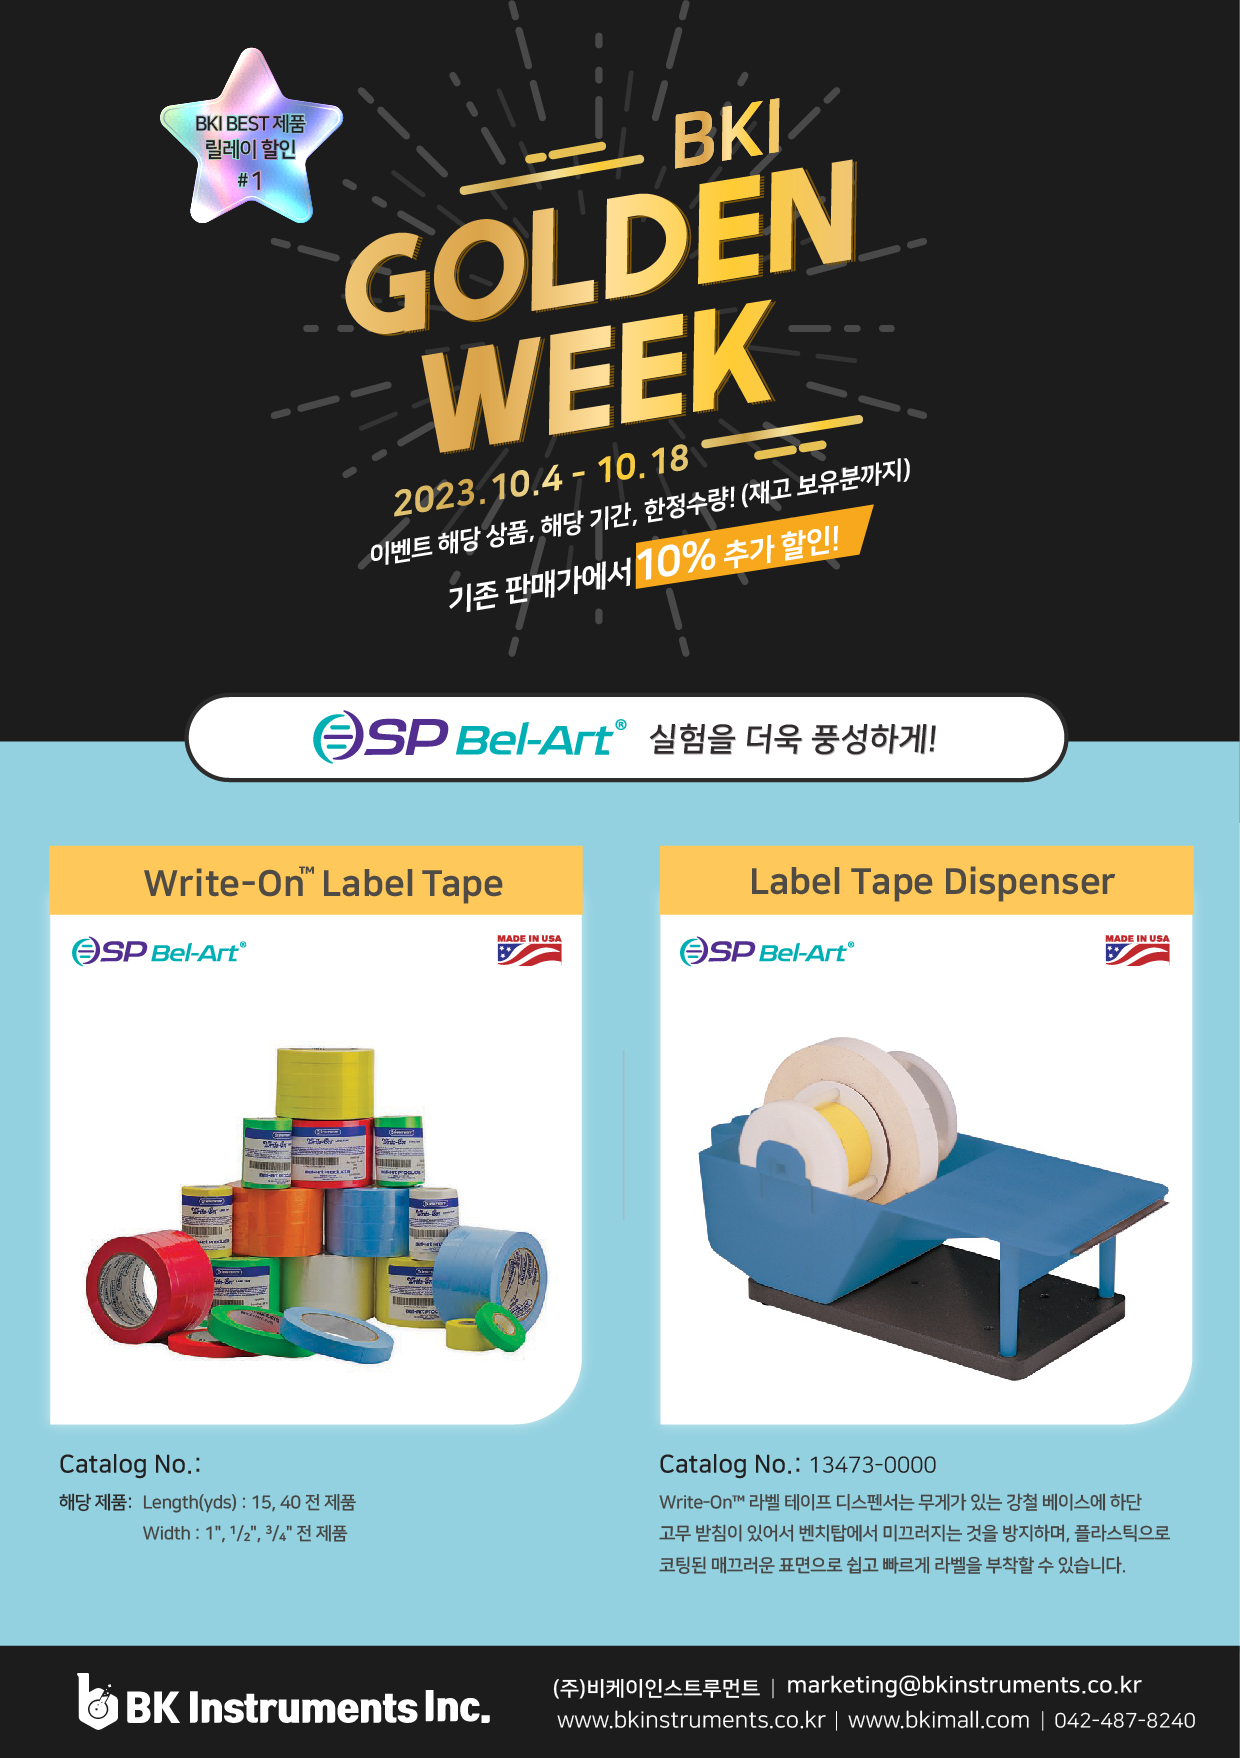 [기획전] BKI Golden Week #1 (라벨 테이프, 라벨 디스펜서) 23. 10. 4 - 10. 18